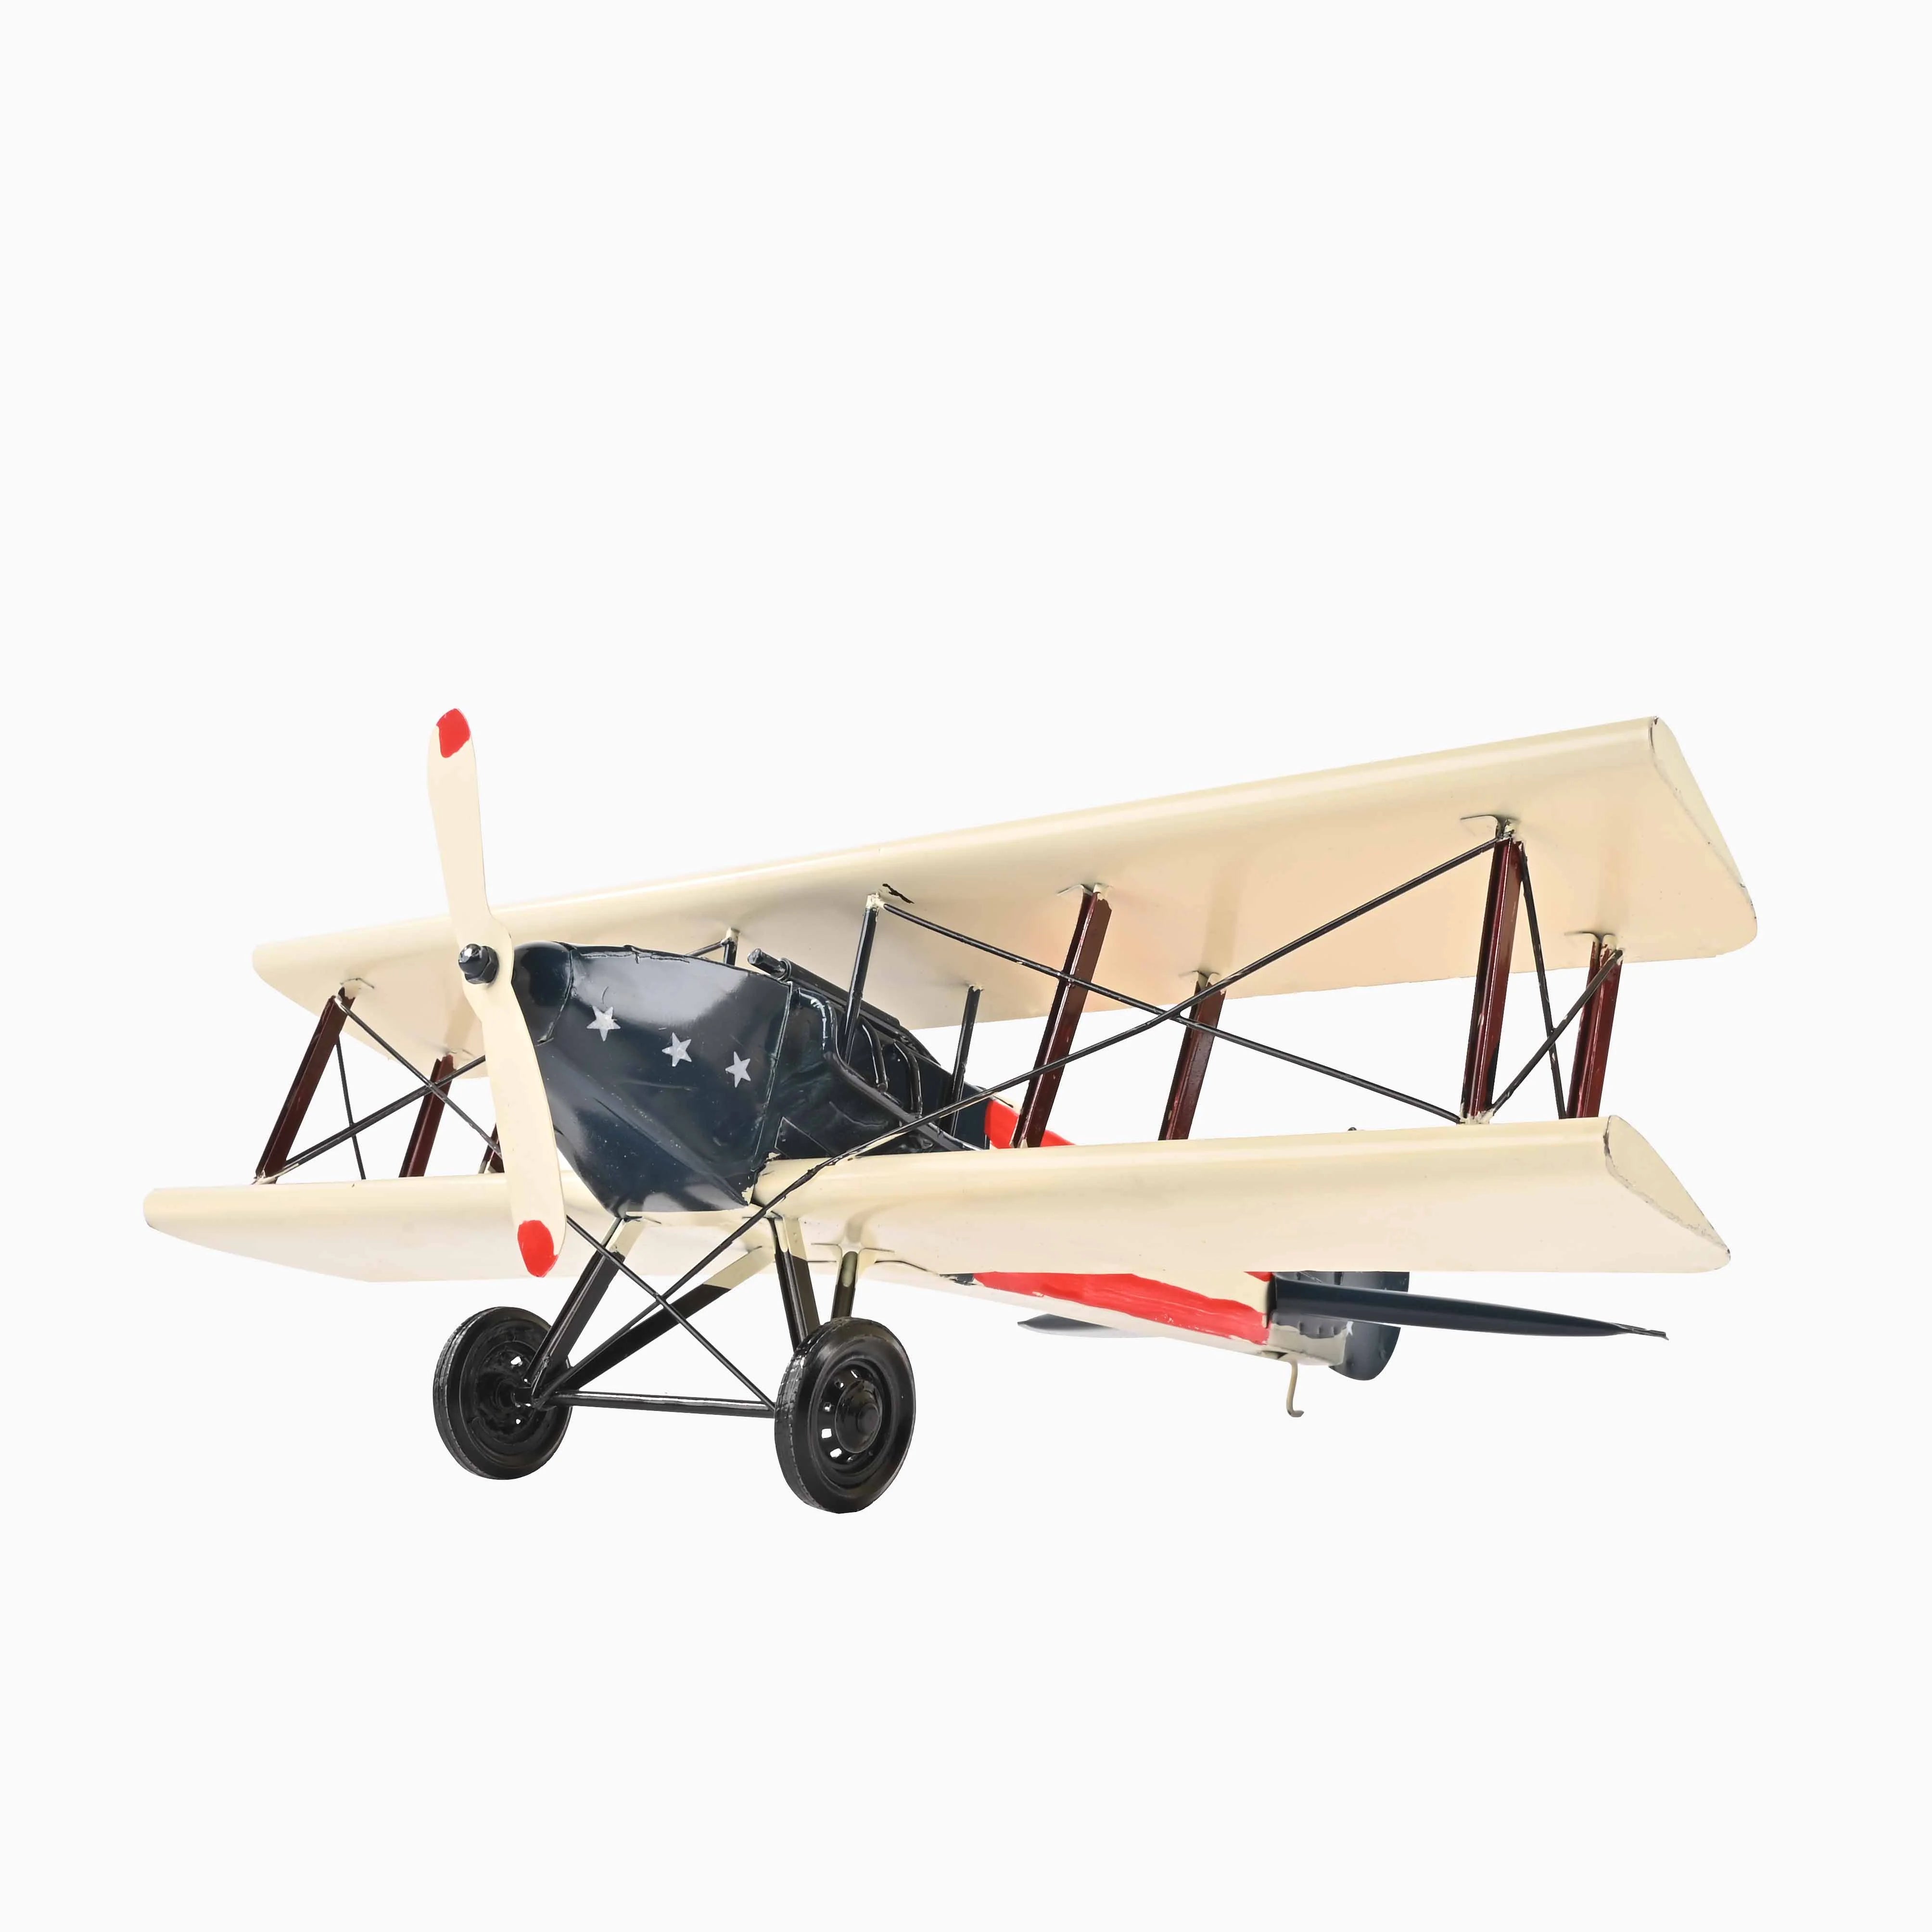 Large Vintage Airplane Metal Model